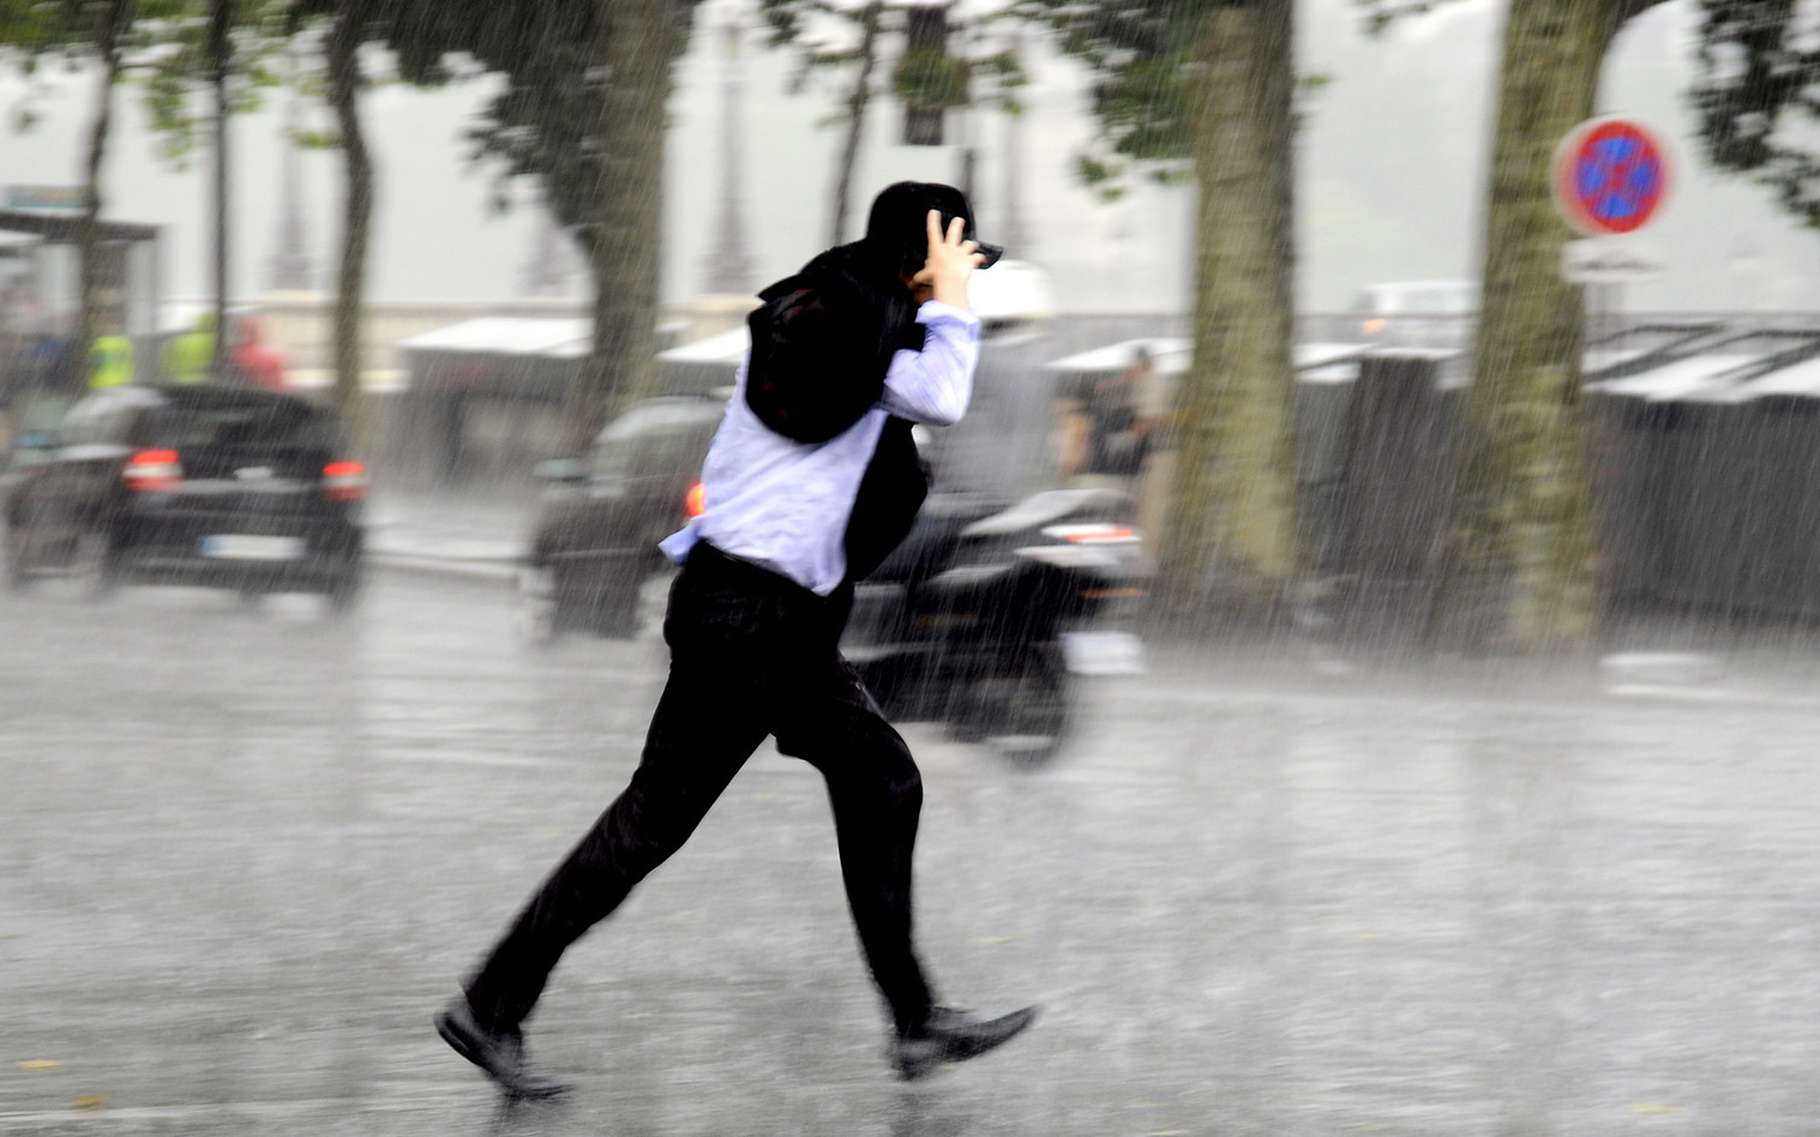 Dans les régions du sud-est de la France, les pluies extrêmes sont-elles devenues plus fréquentes que dans le passé ? Quelles sont les tendances pour le futur ? © alexkatkov, Shutterstock